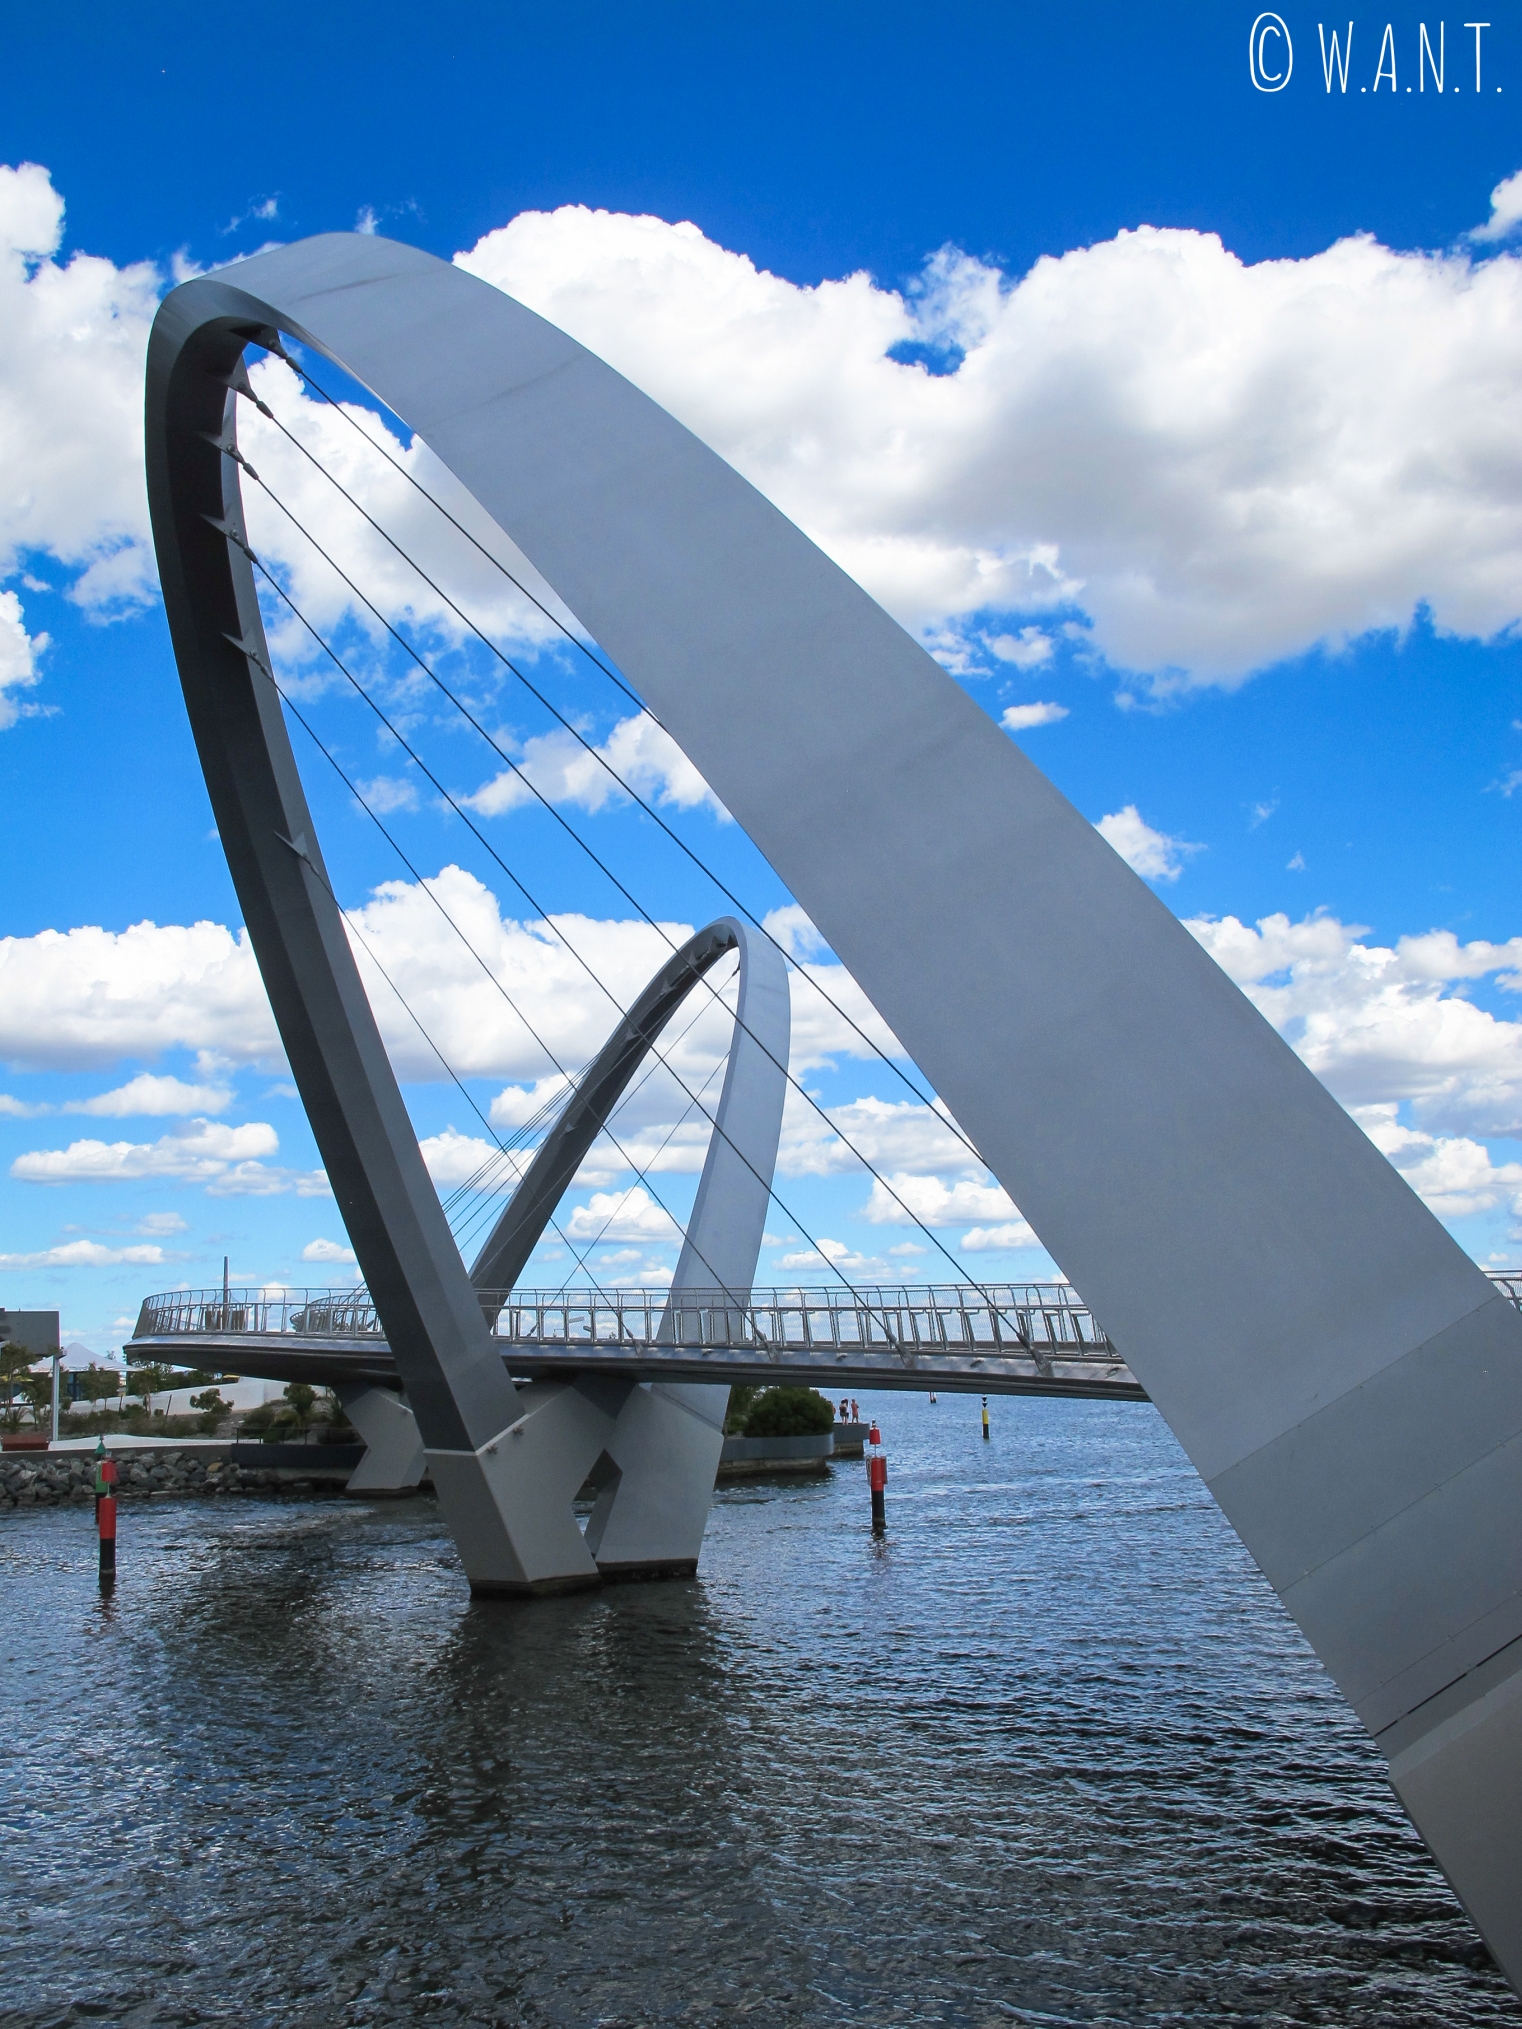 Le pont du Elizabeth Quay de Perth dont le design contemporain a rendu iconique le lieu